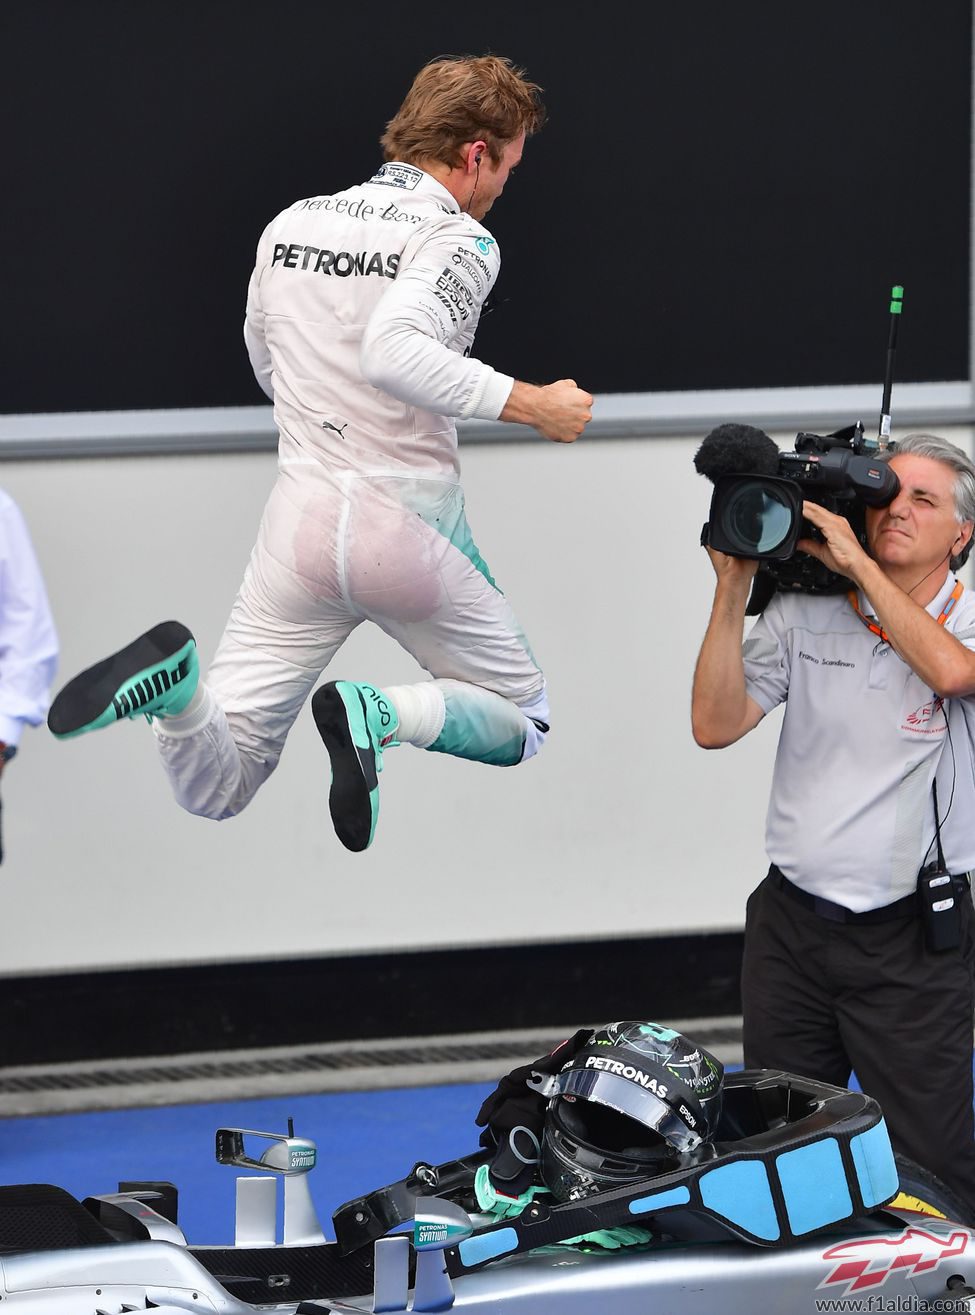 La cámara capta el salto triunfal de Nico Rosberg